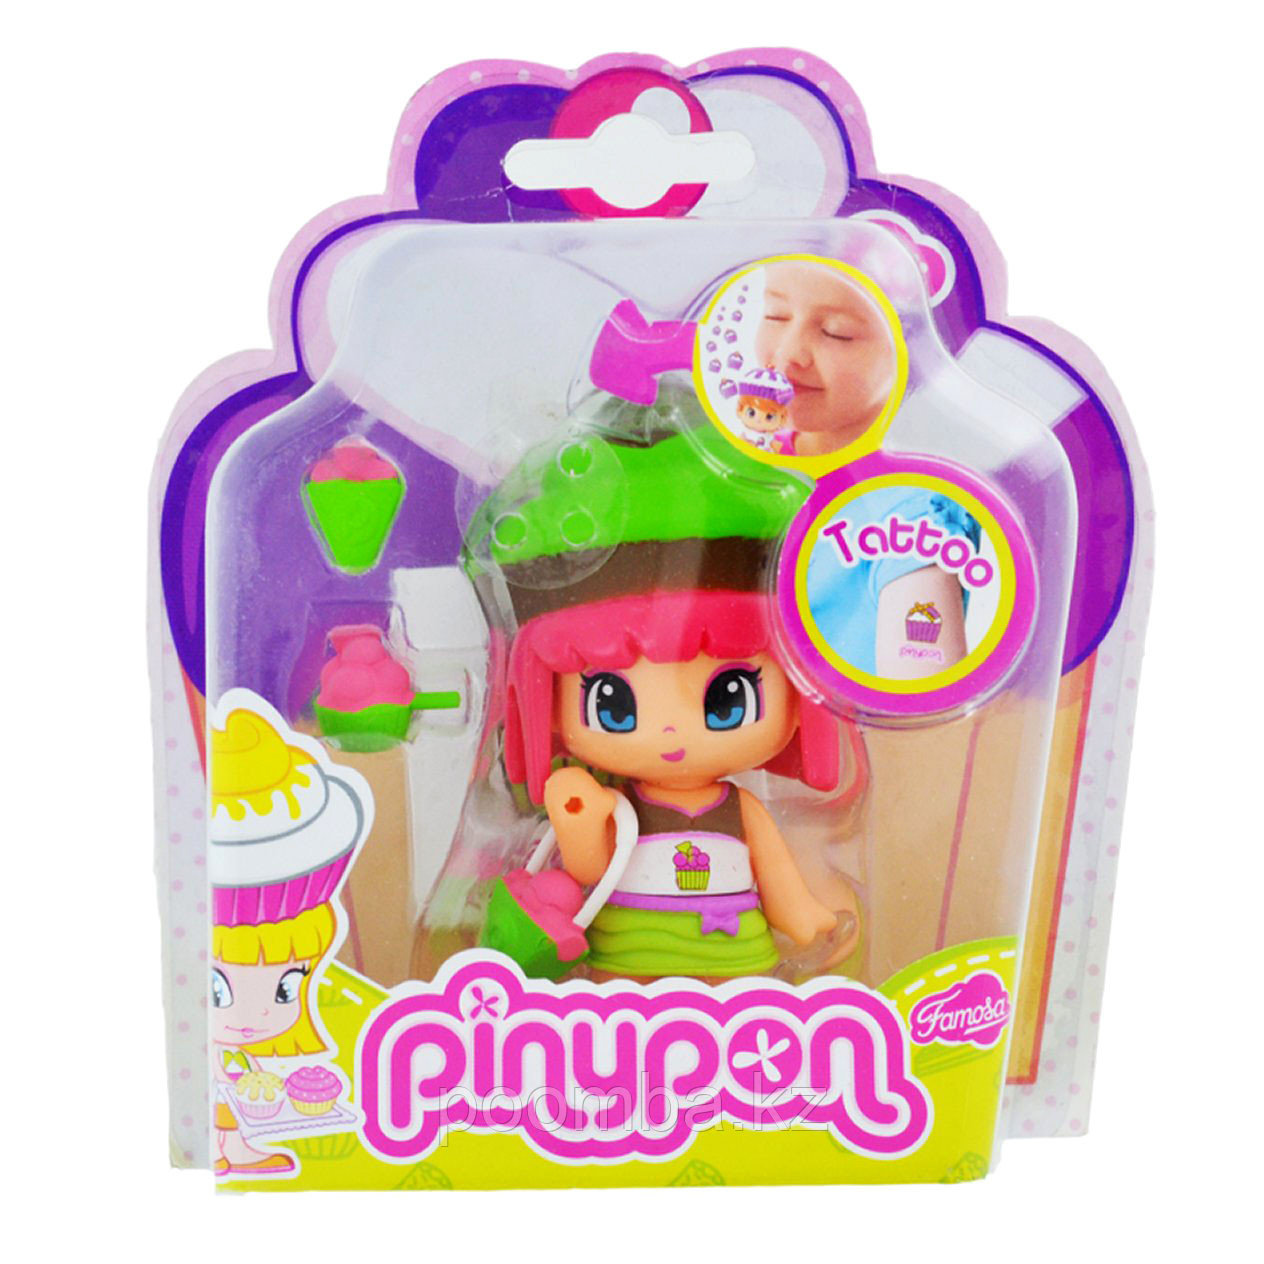 Кукла Пинипон с ароматом пирожного, длинные розовые волосы